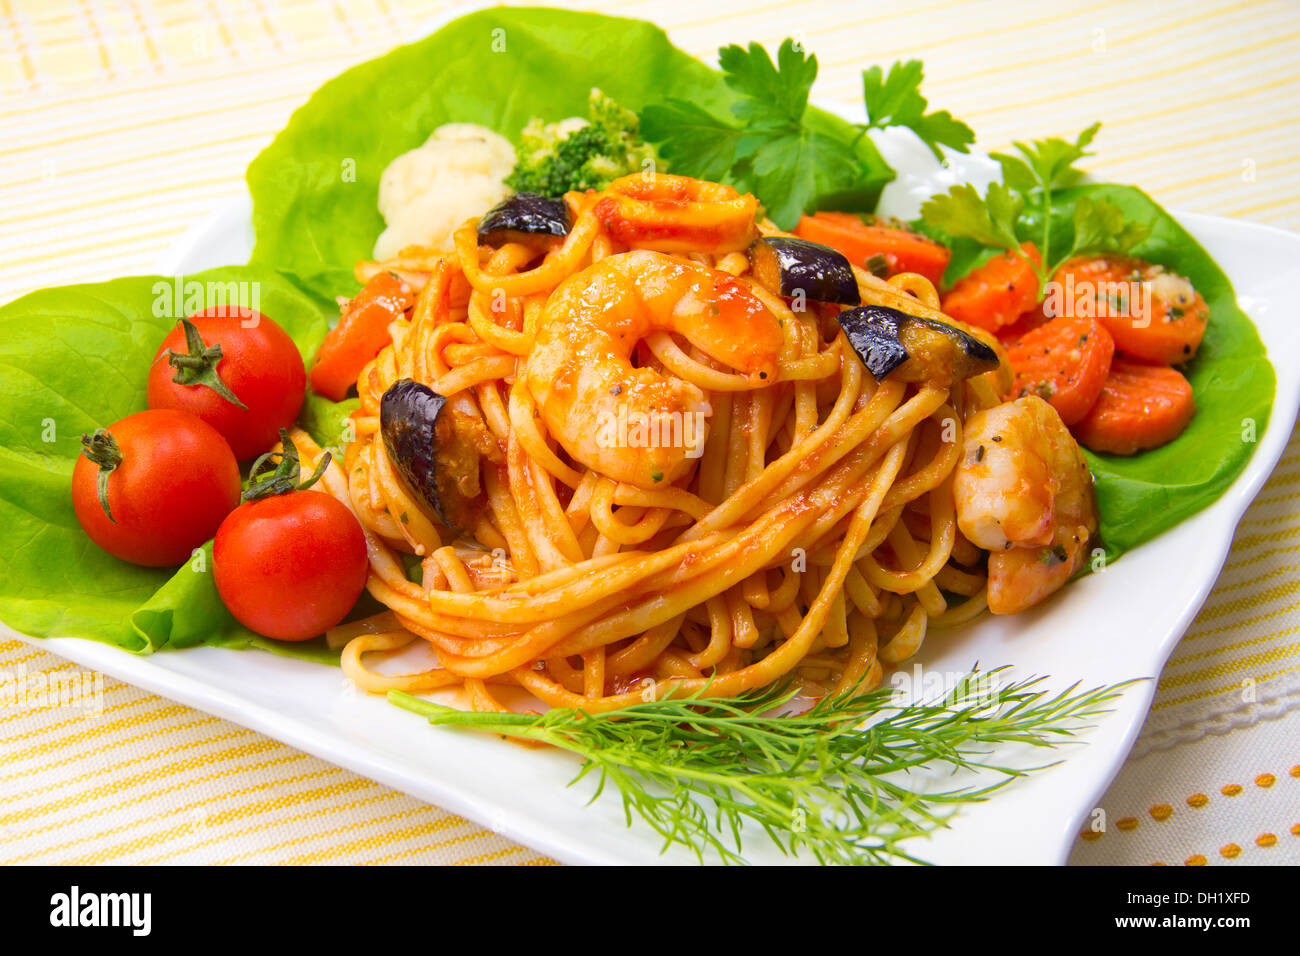 Spaghetti alla pescatora Stock Photo - Alamy